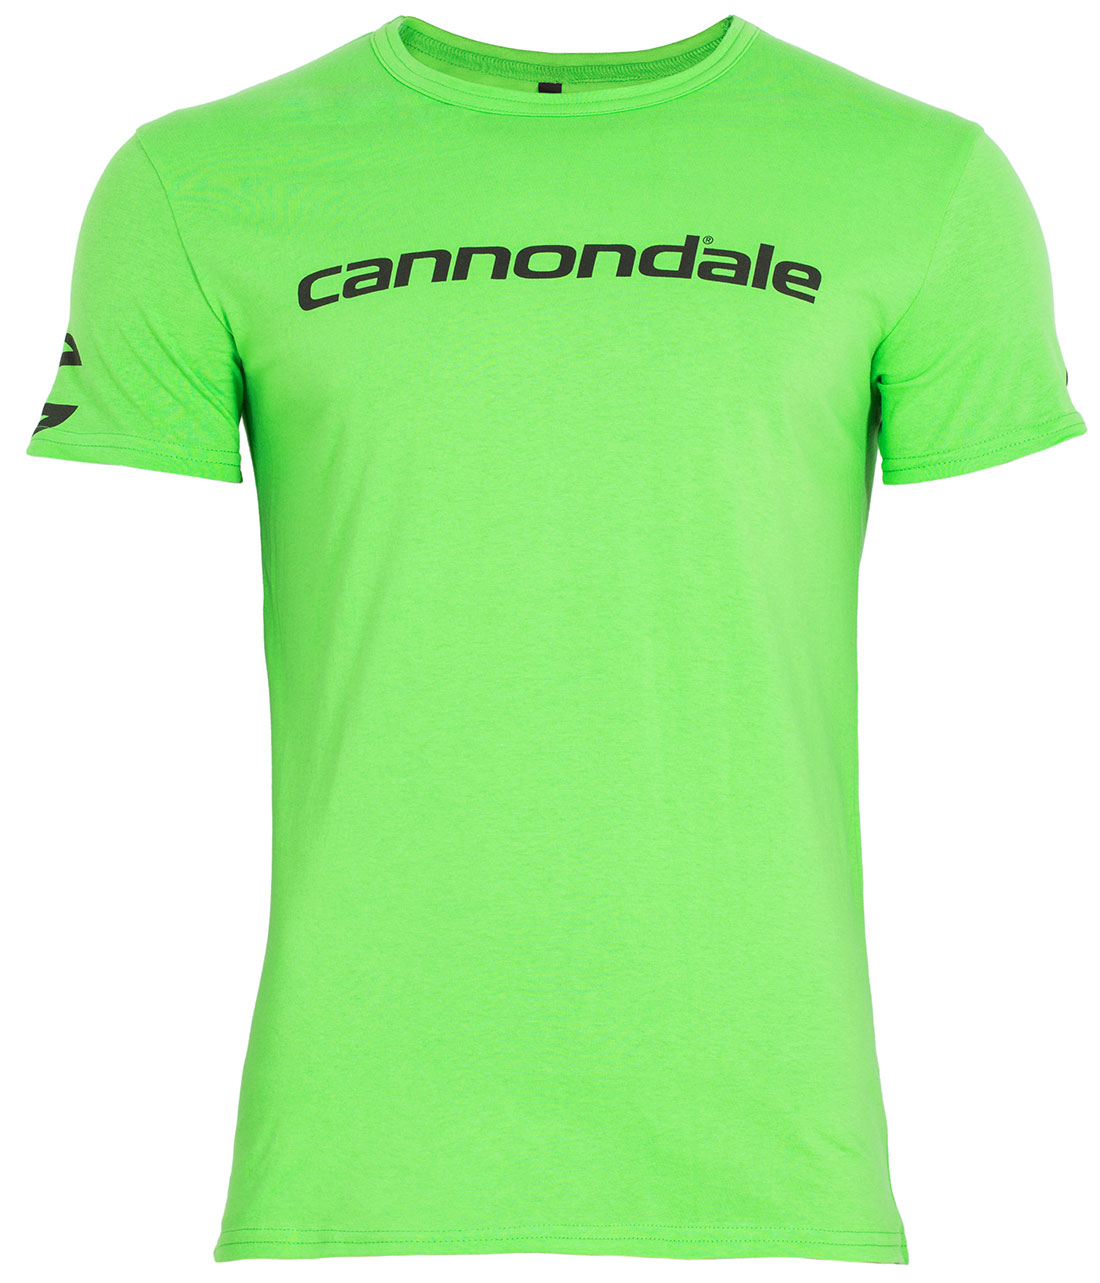 Футболка Cannondale с черным горизонтальным логотипом, зелёная, размер XL фото 